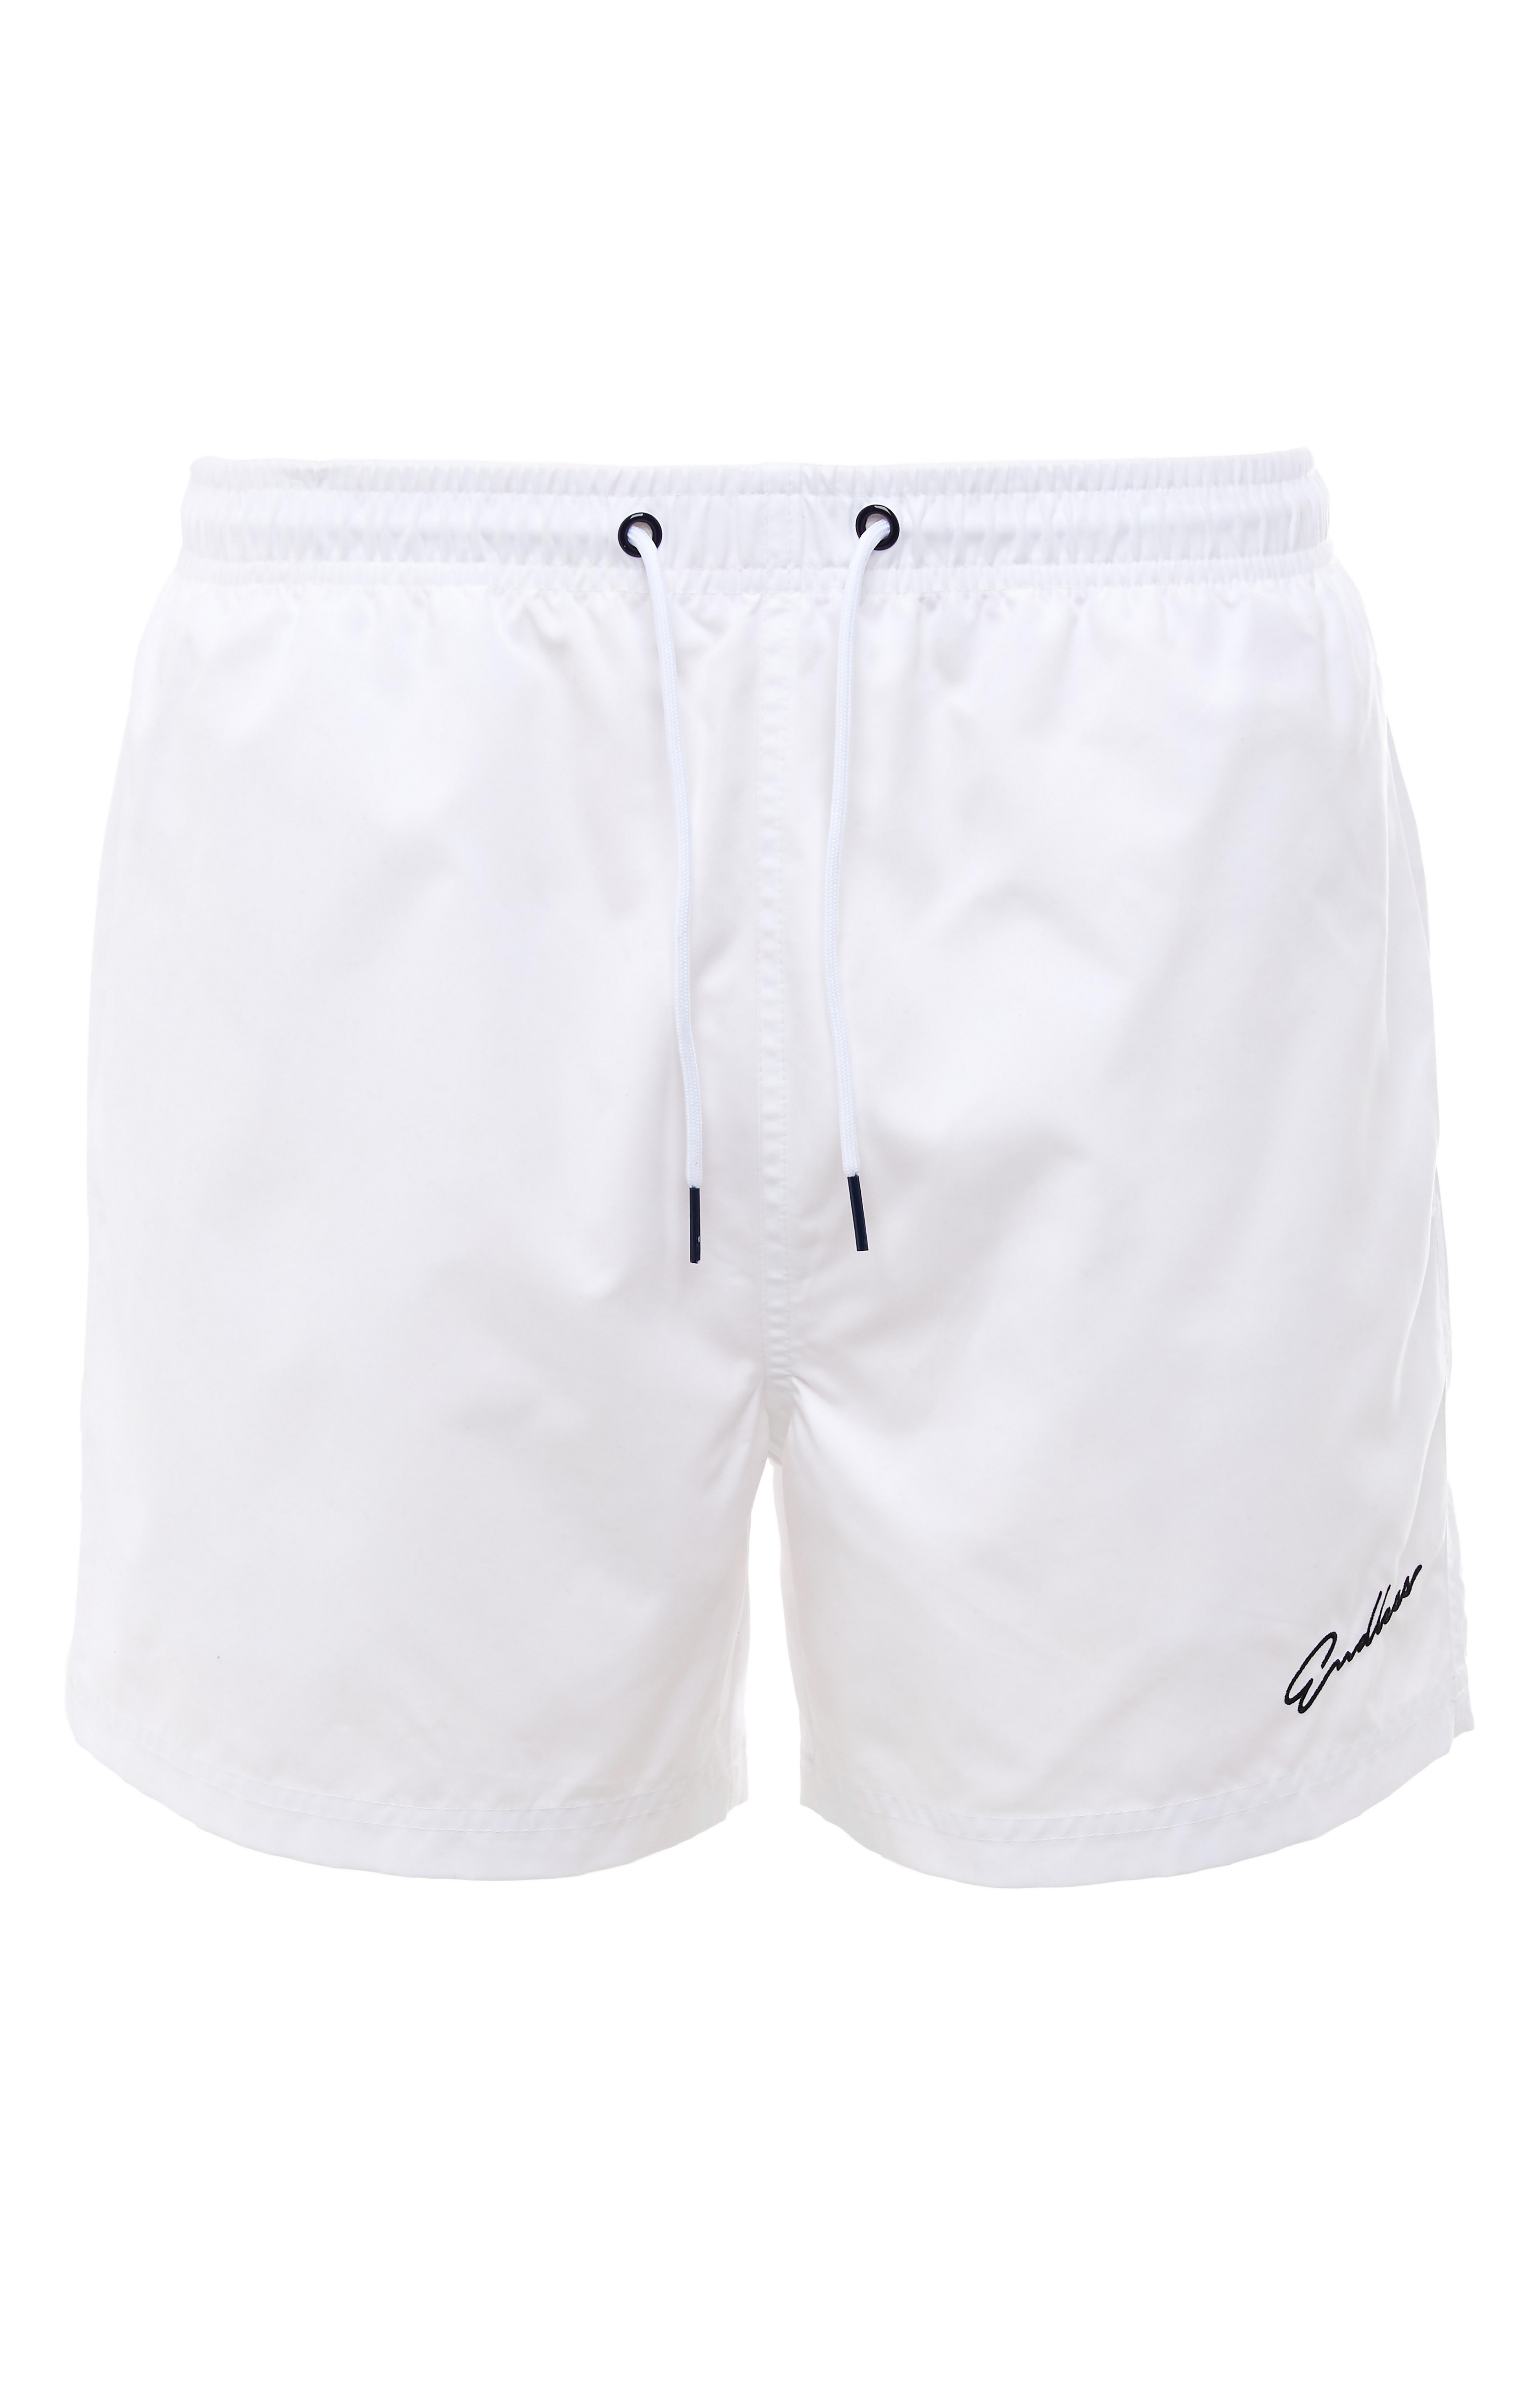 primark white shorts